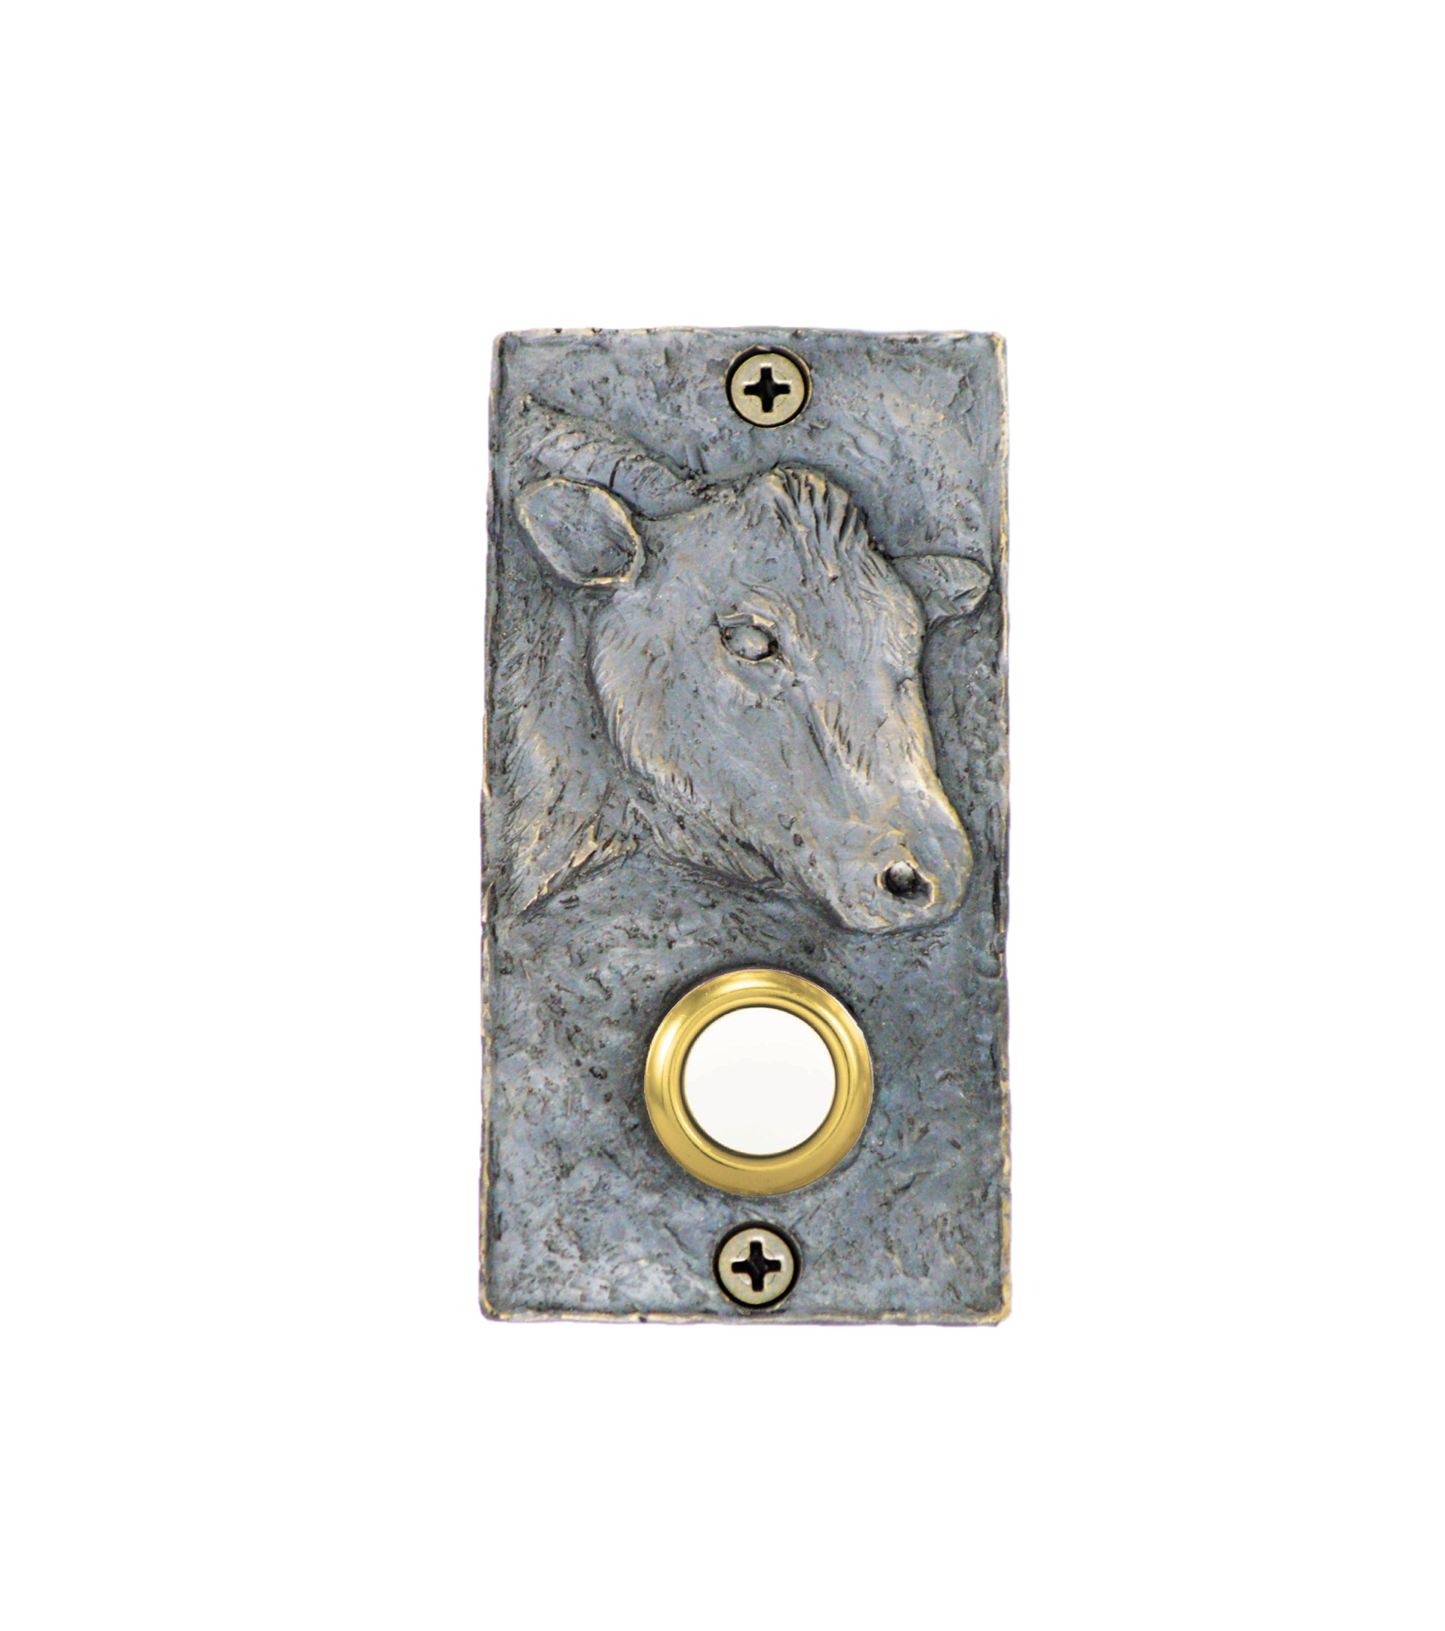 Rectangular Bronze Cow Doorbell - bright patina